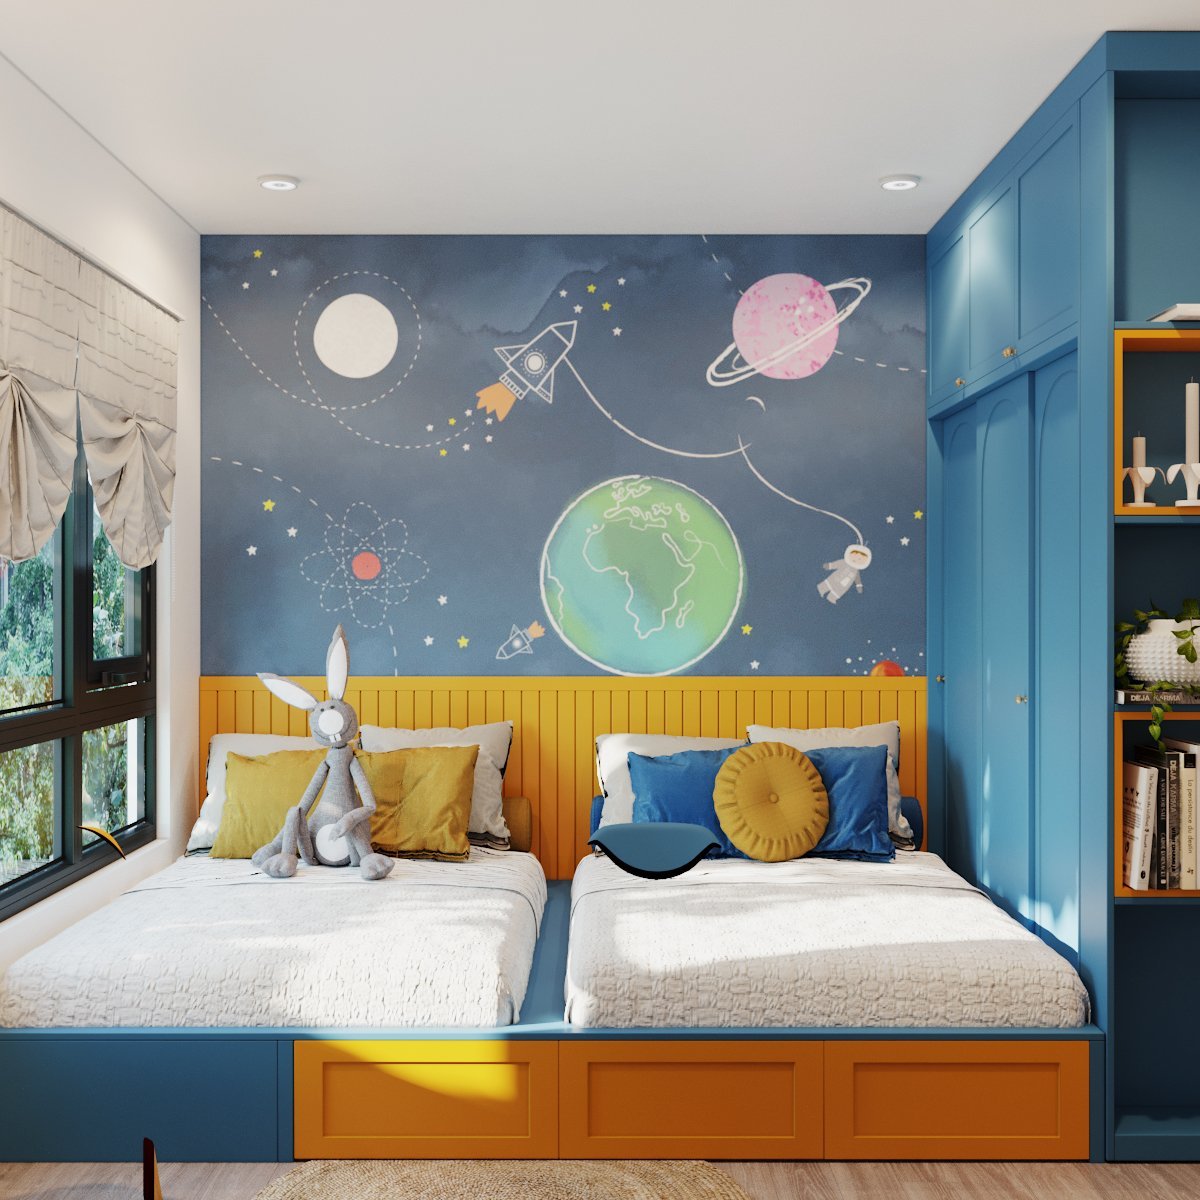 phòng ngủ với hai giường màu vàng, xanh lam, tranh tường đầu giường kiểu tàu vũ trụ